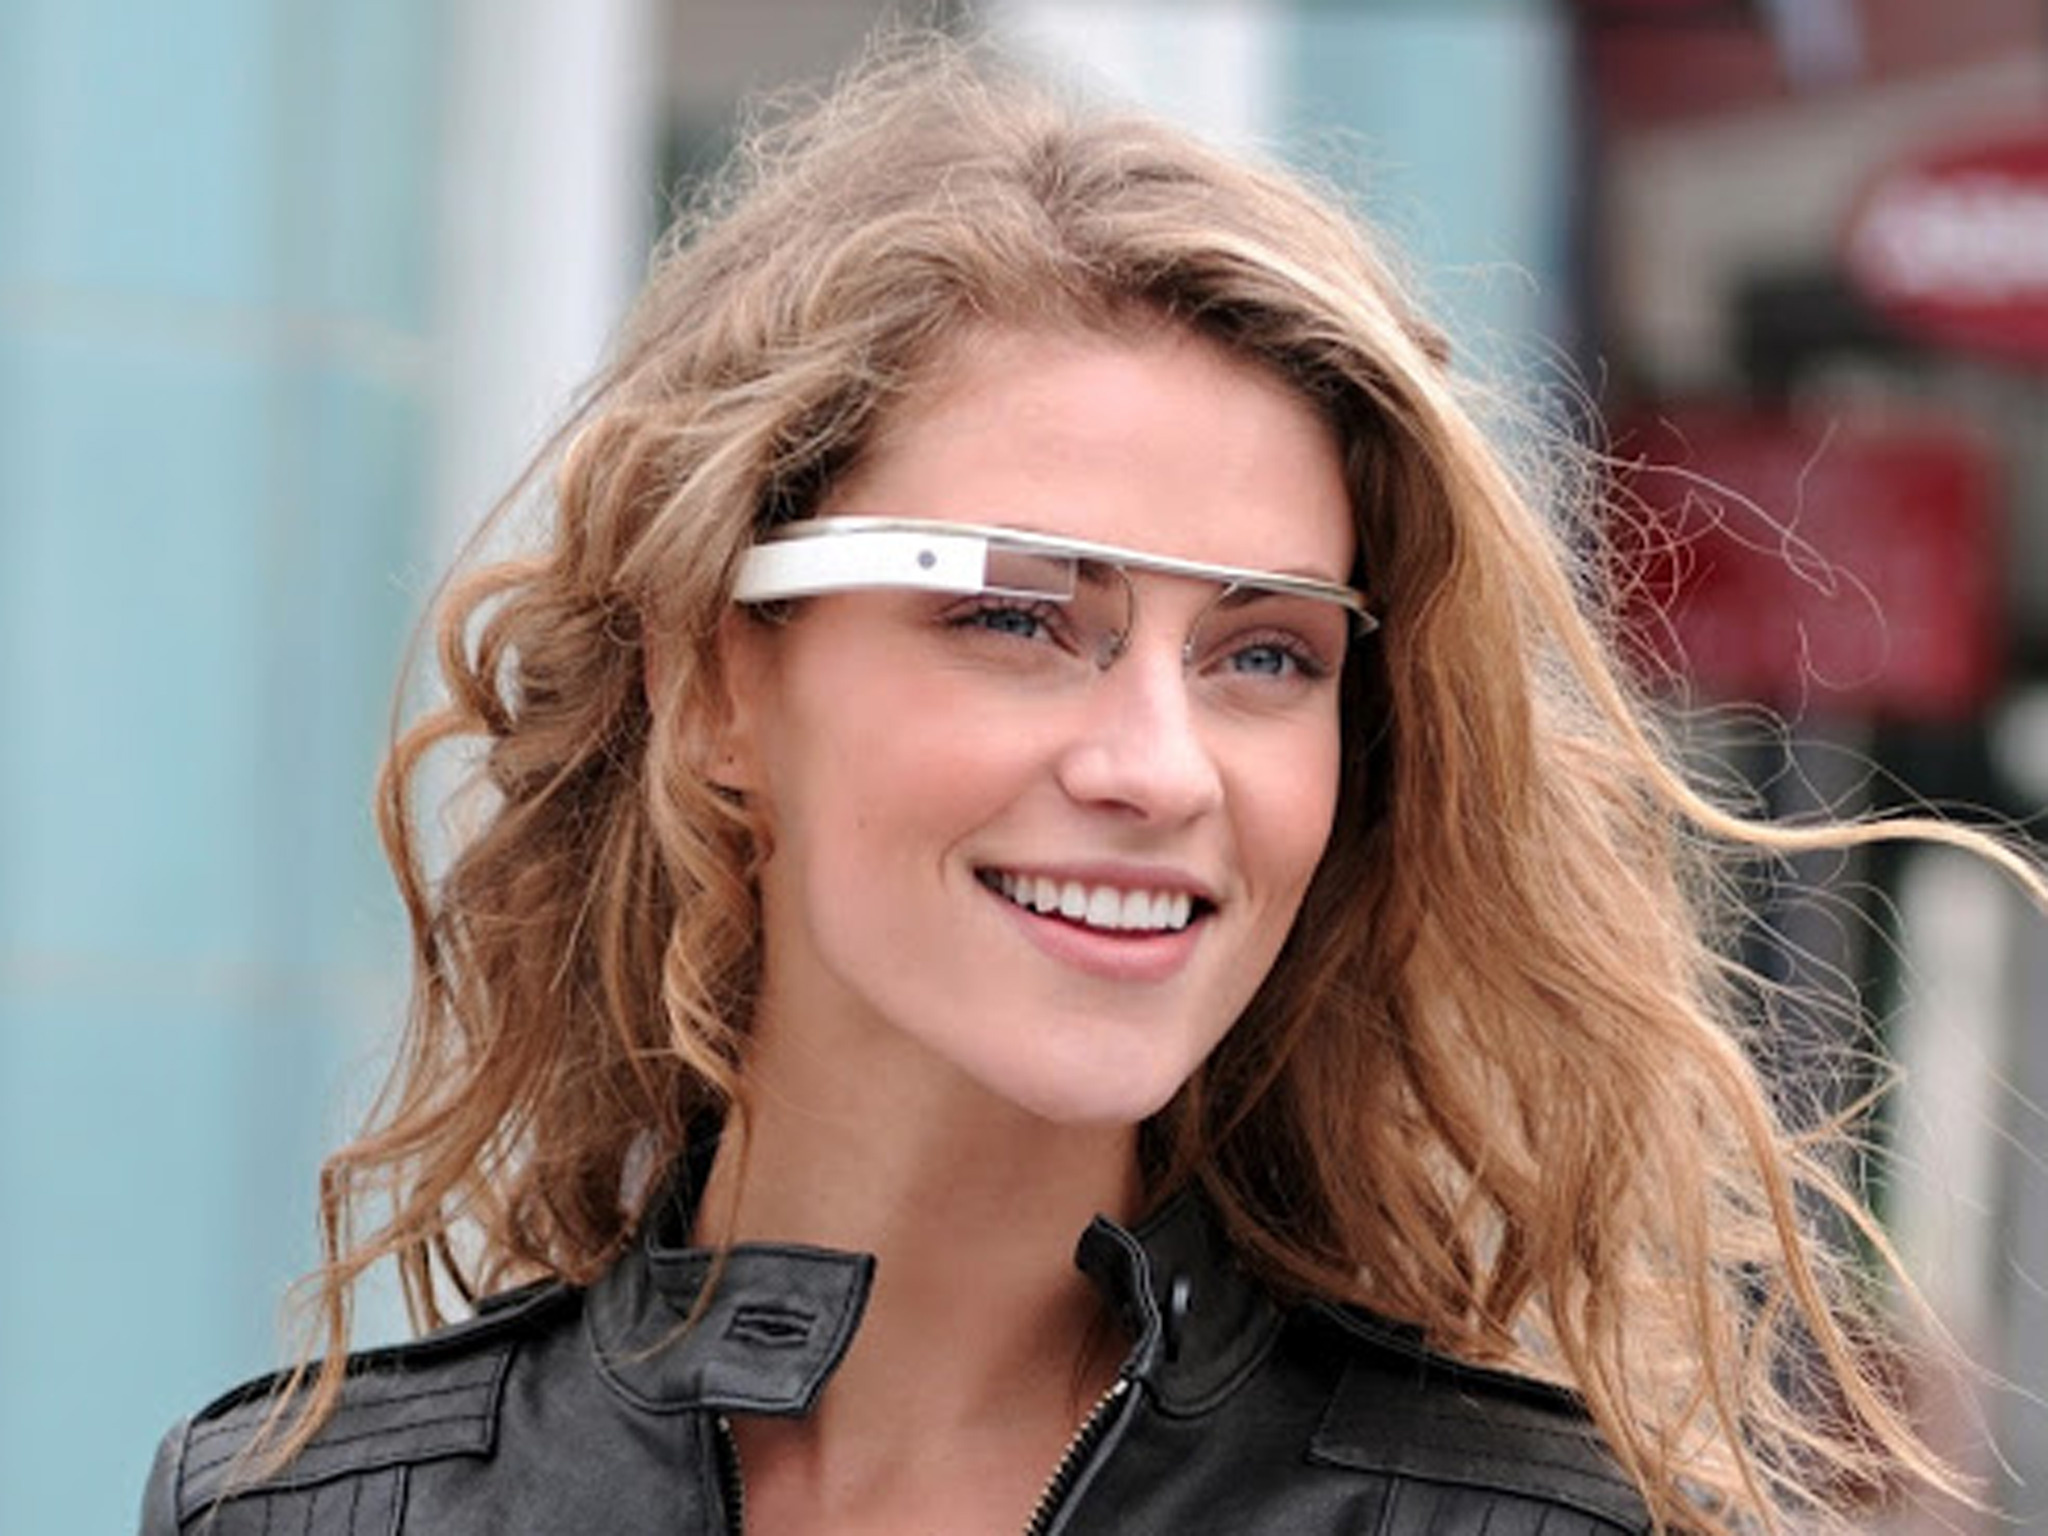 Google Glass kullanıcılarına kötü haber